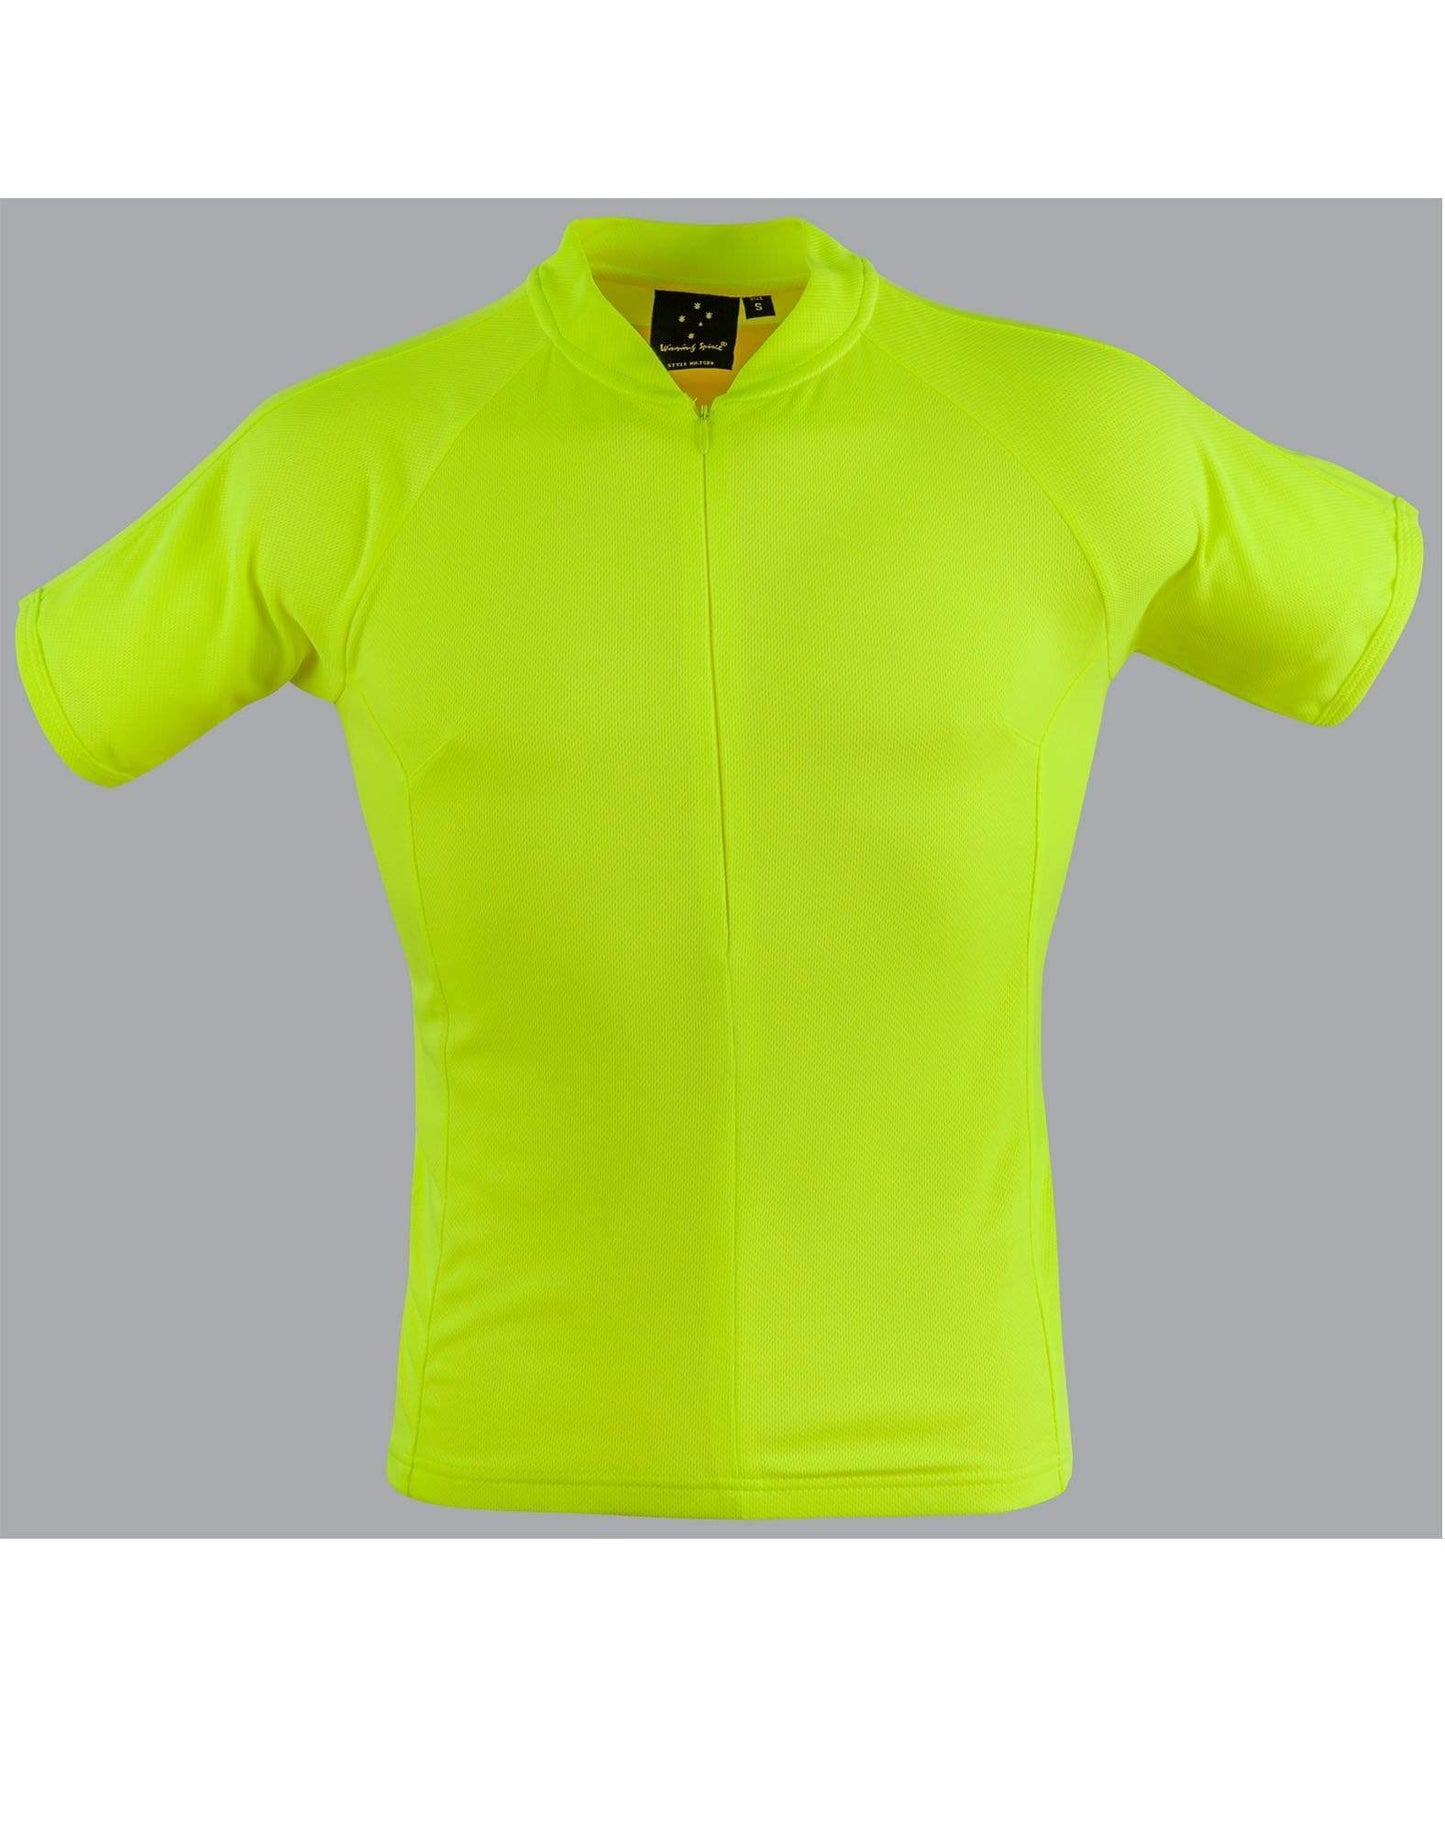 Winning Spirit Casual Wear Fluoro yellow / 2XS/8 Cycling Top Ts89